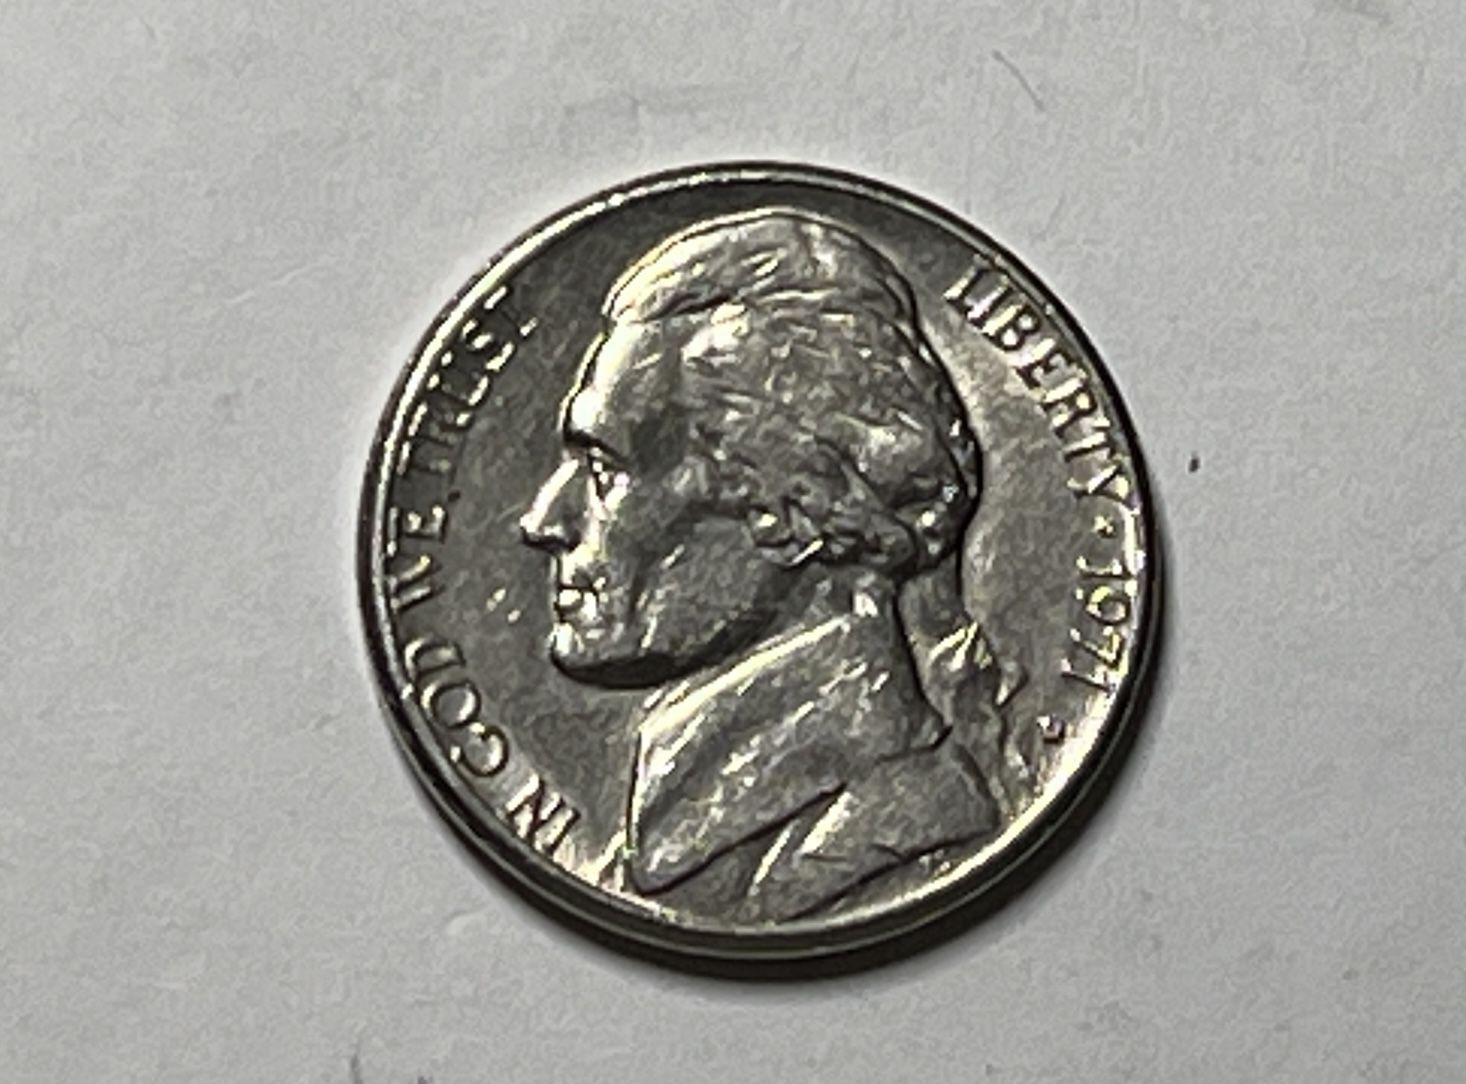 Nickel 1971